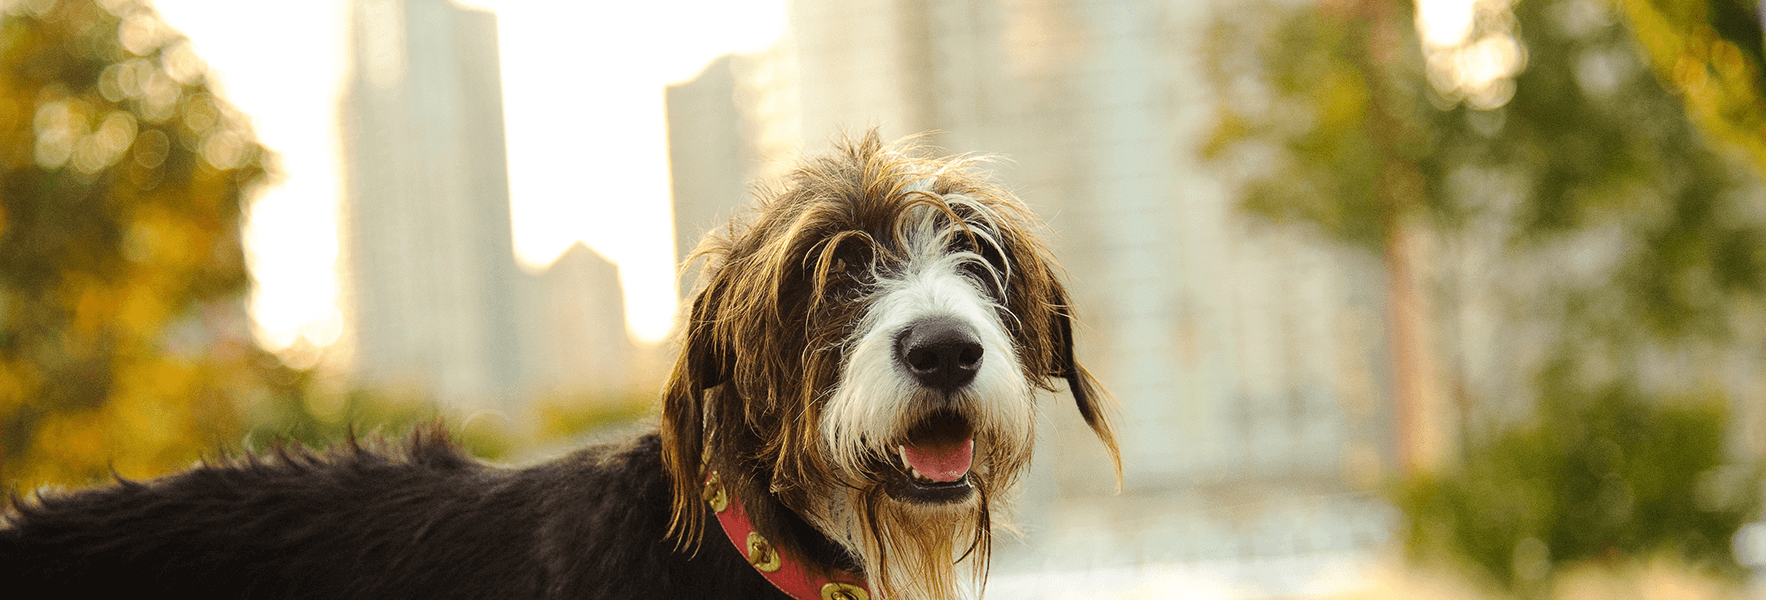 chien moelleux avec paysage urbain en arrière-plan